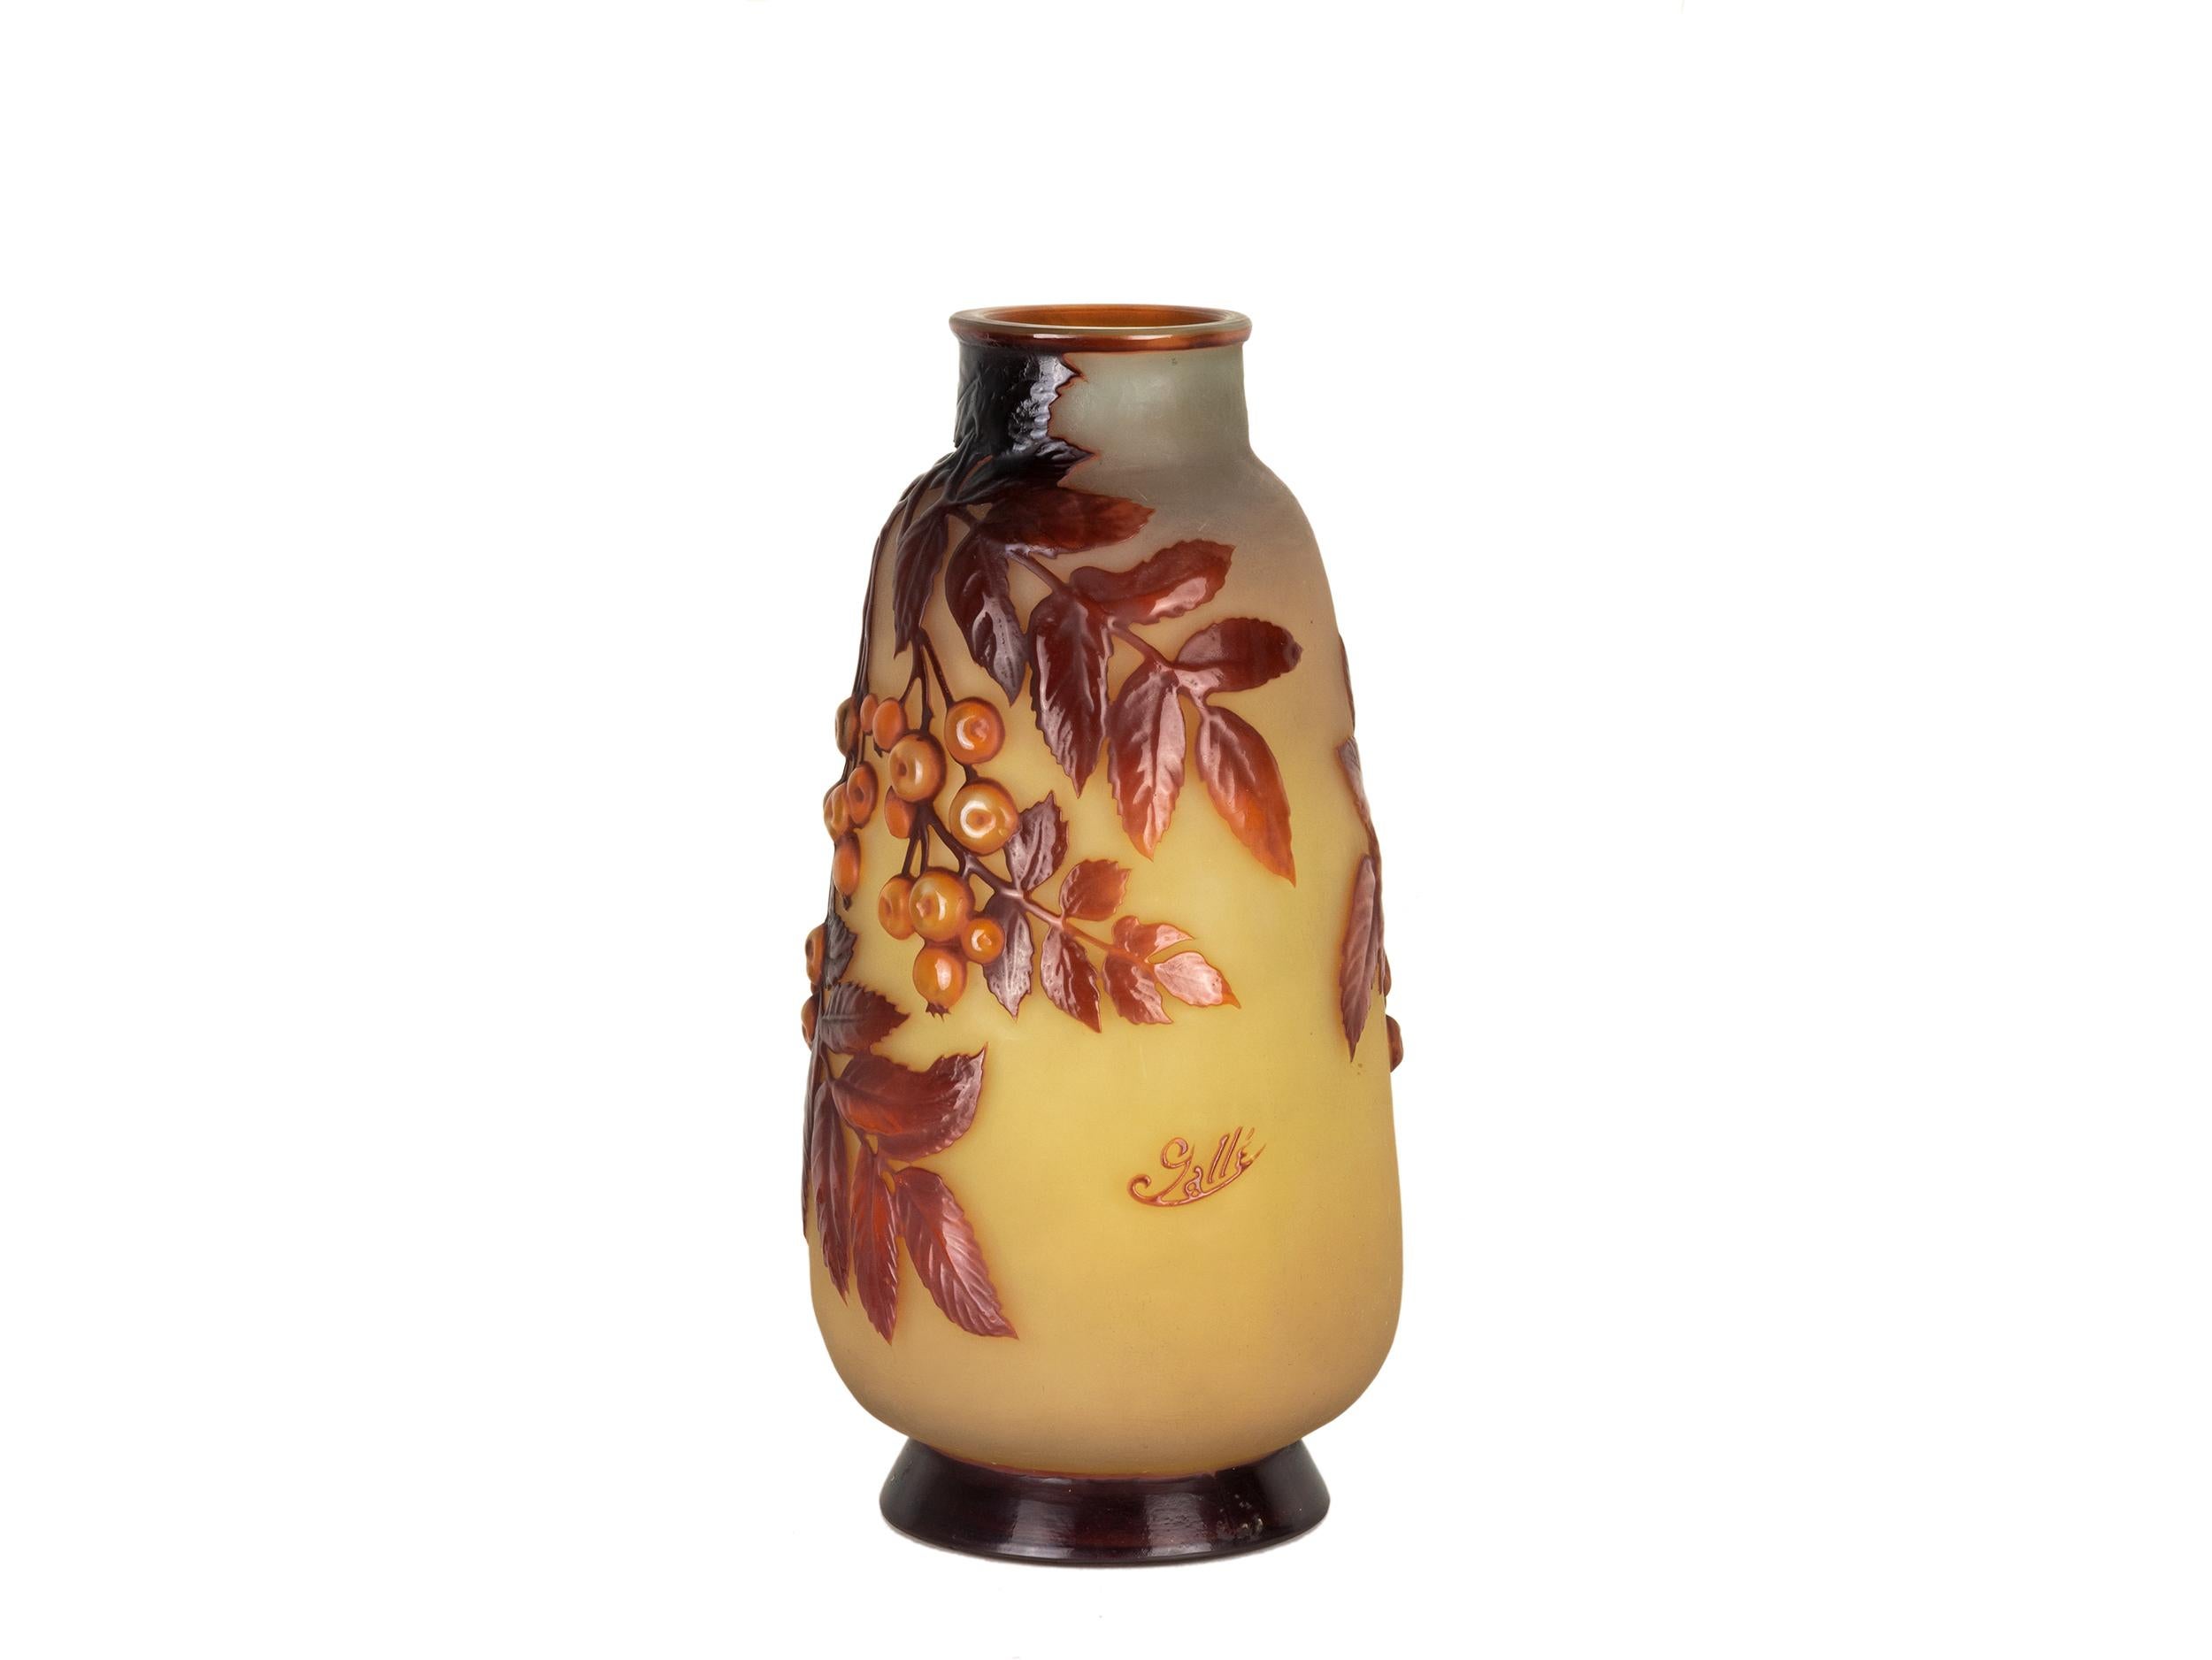 Eine seltene Etablissement Galle 'Kirschen' Vase aus mundgeblasenem Souffle Cameo Glas.
Balusterkörper mit säuregeätztem und mundgeblasenem Dekor in Rottönen auf geätztem gelbem und opakem Grund, über einem ausladenden runden Fuß, säuregeätzt